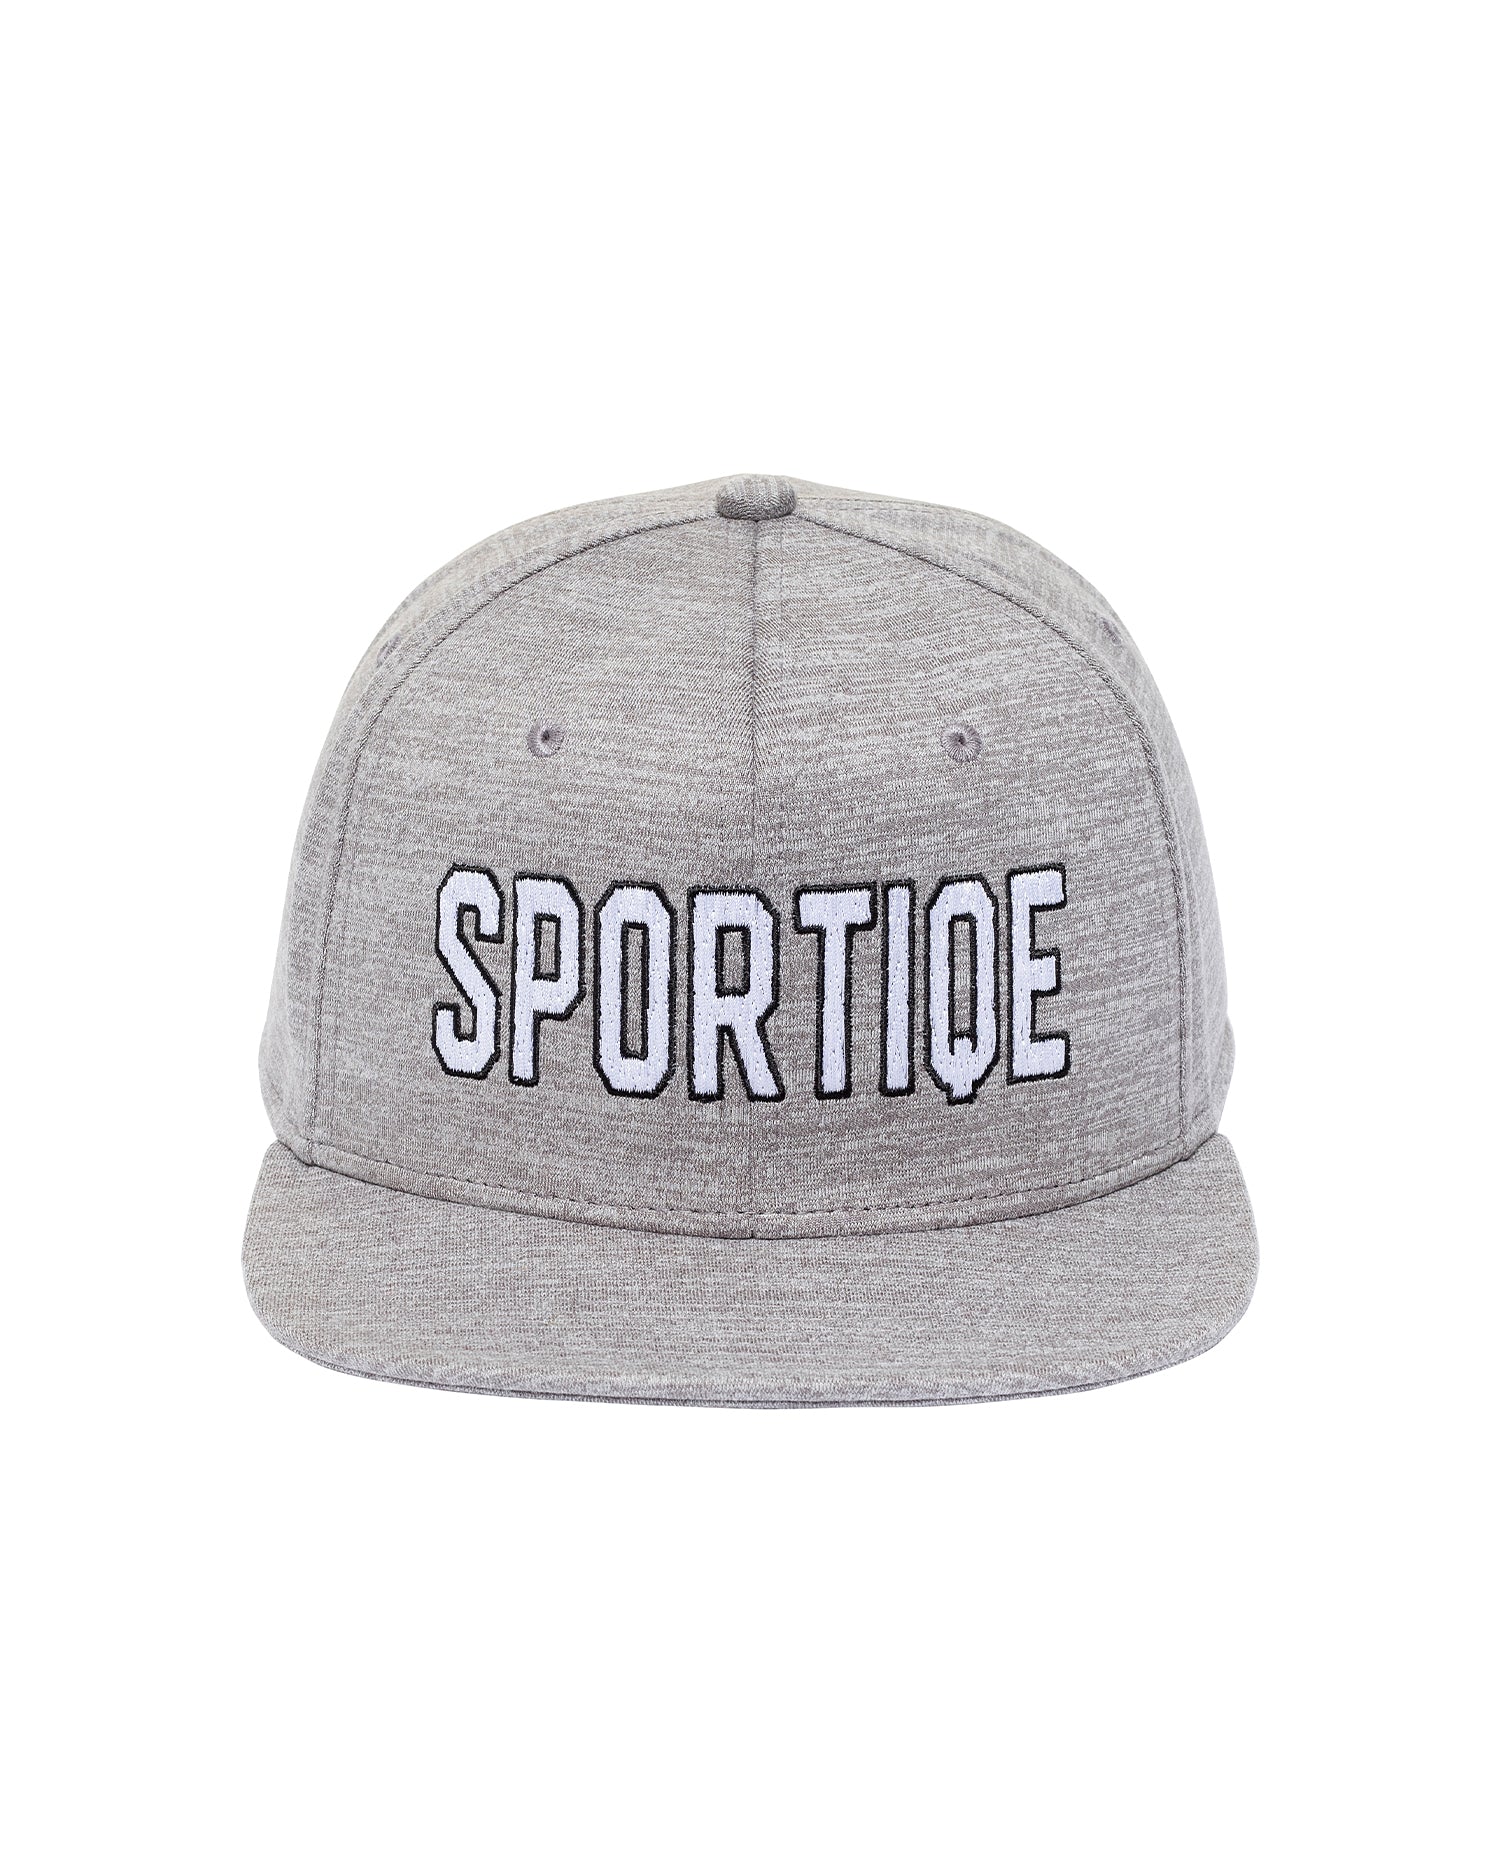 SPORTIQE BROOKING HAT - Sportiqe Apparel 